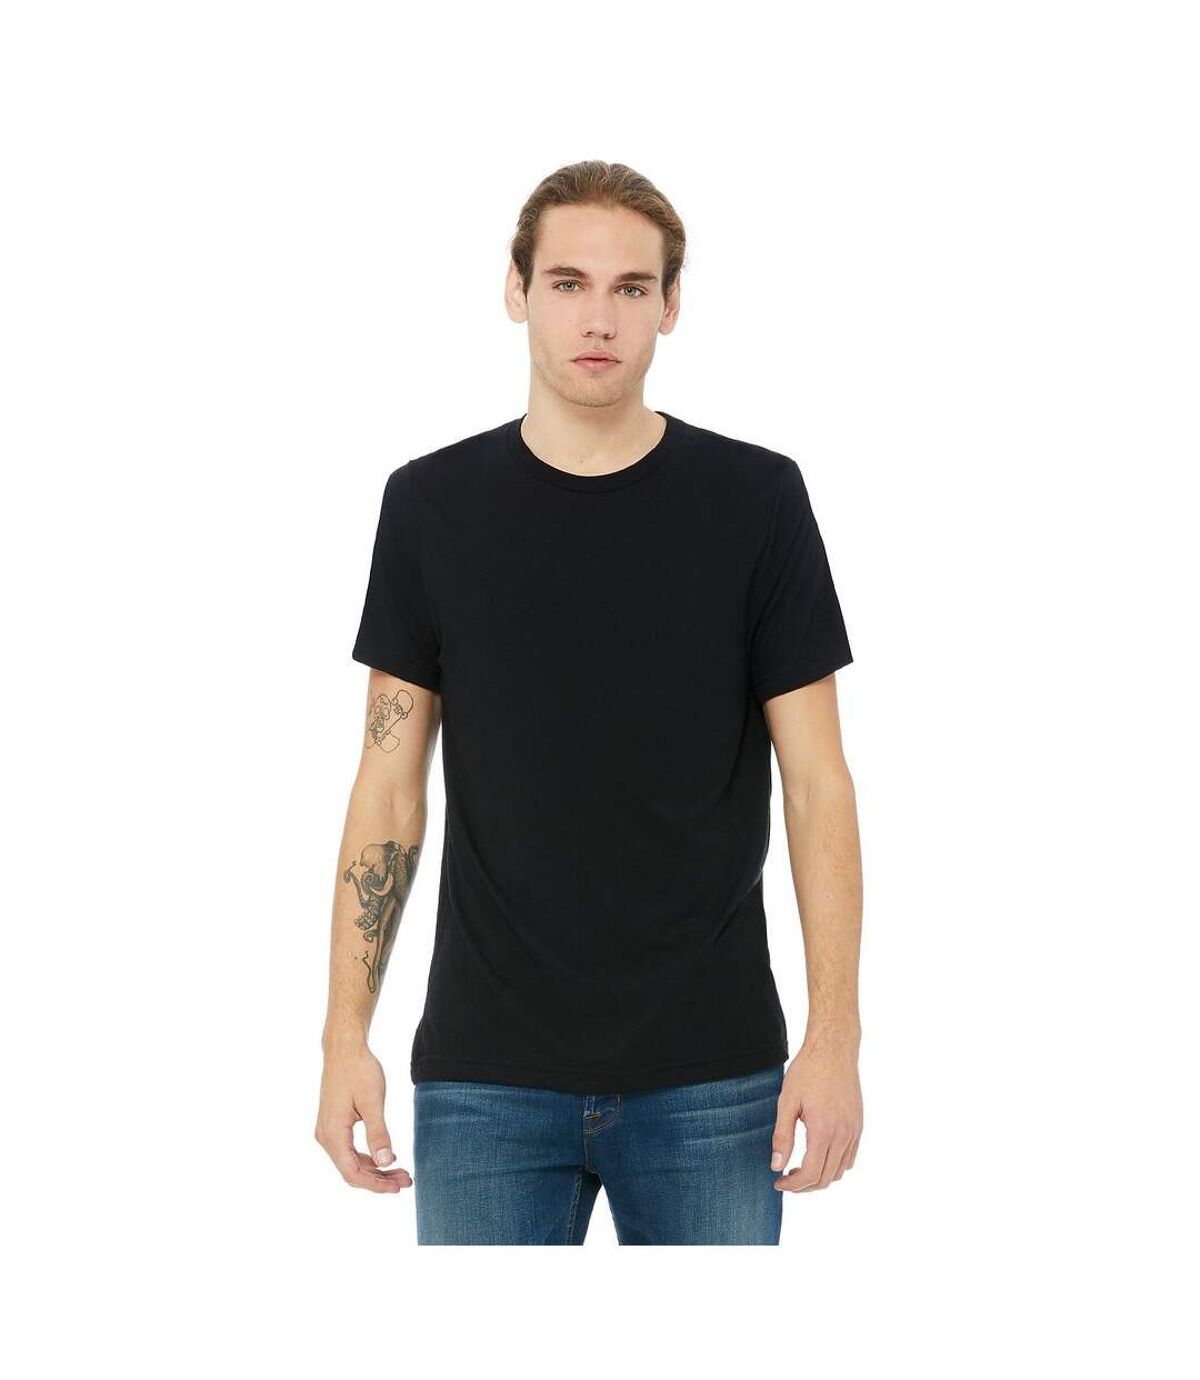 Canvas - T-shirt à manches courtes - Homme (Soldi Noir Triblend) - UTBC2596